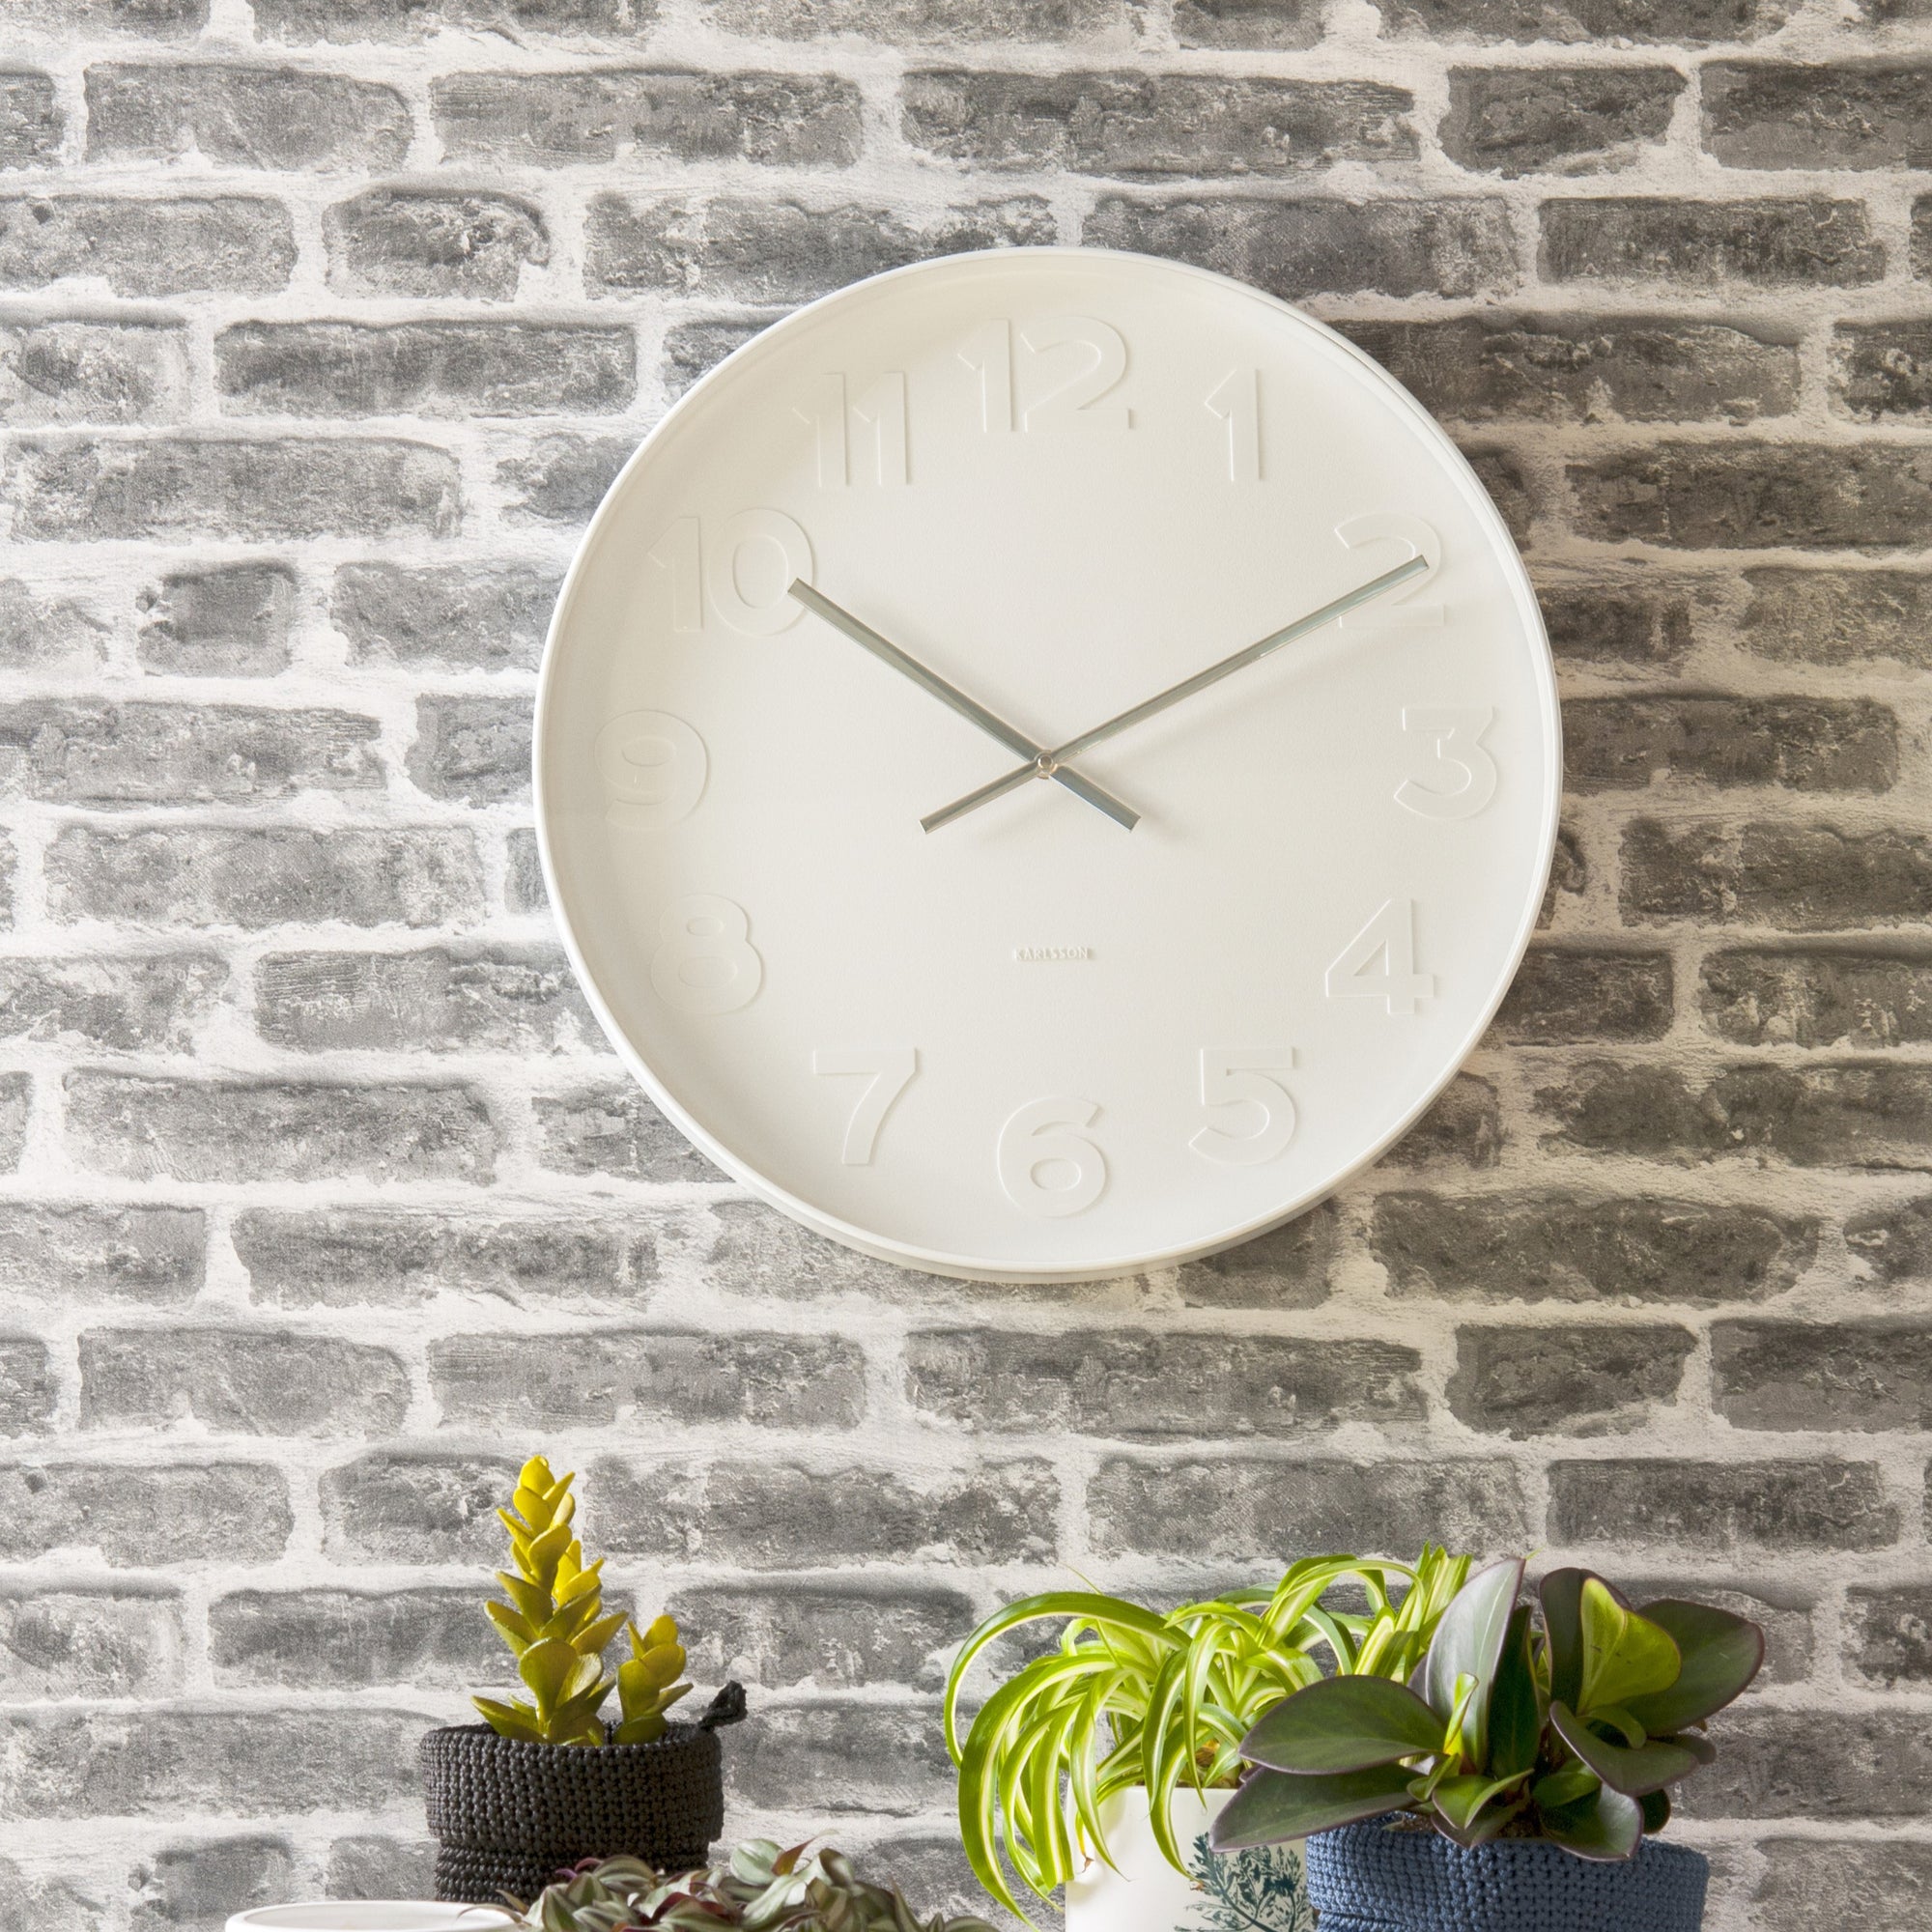 White wall clock hung on grey brick wall